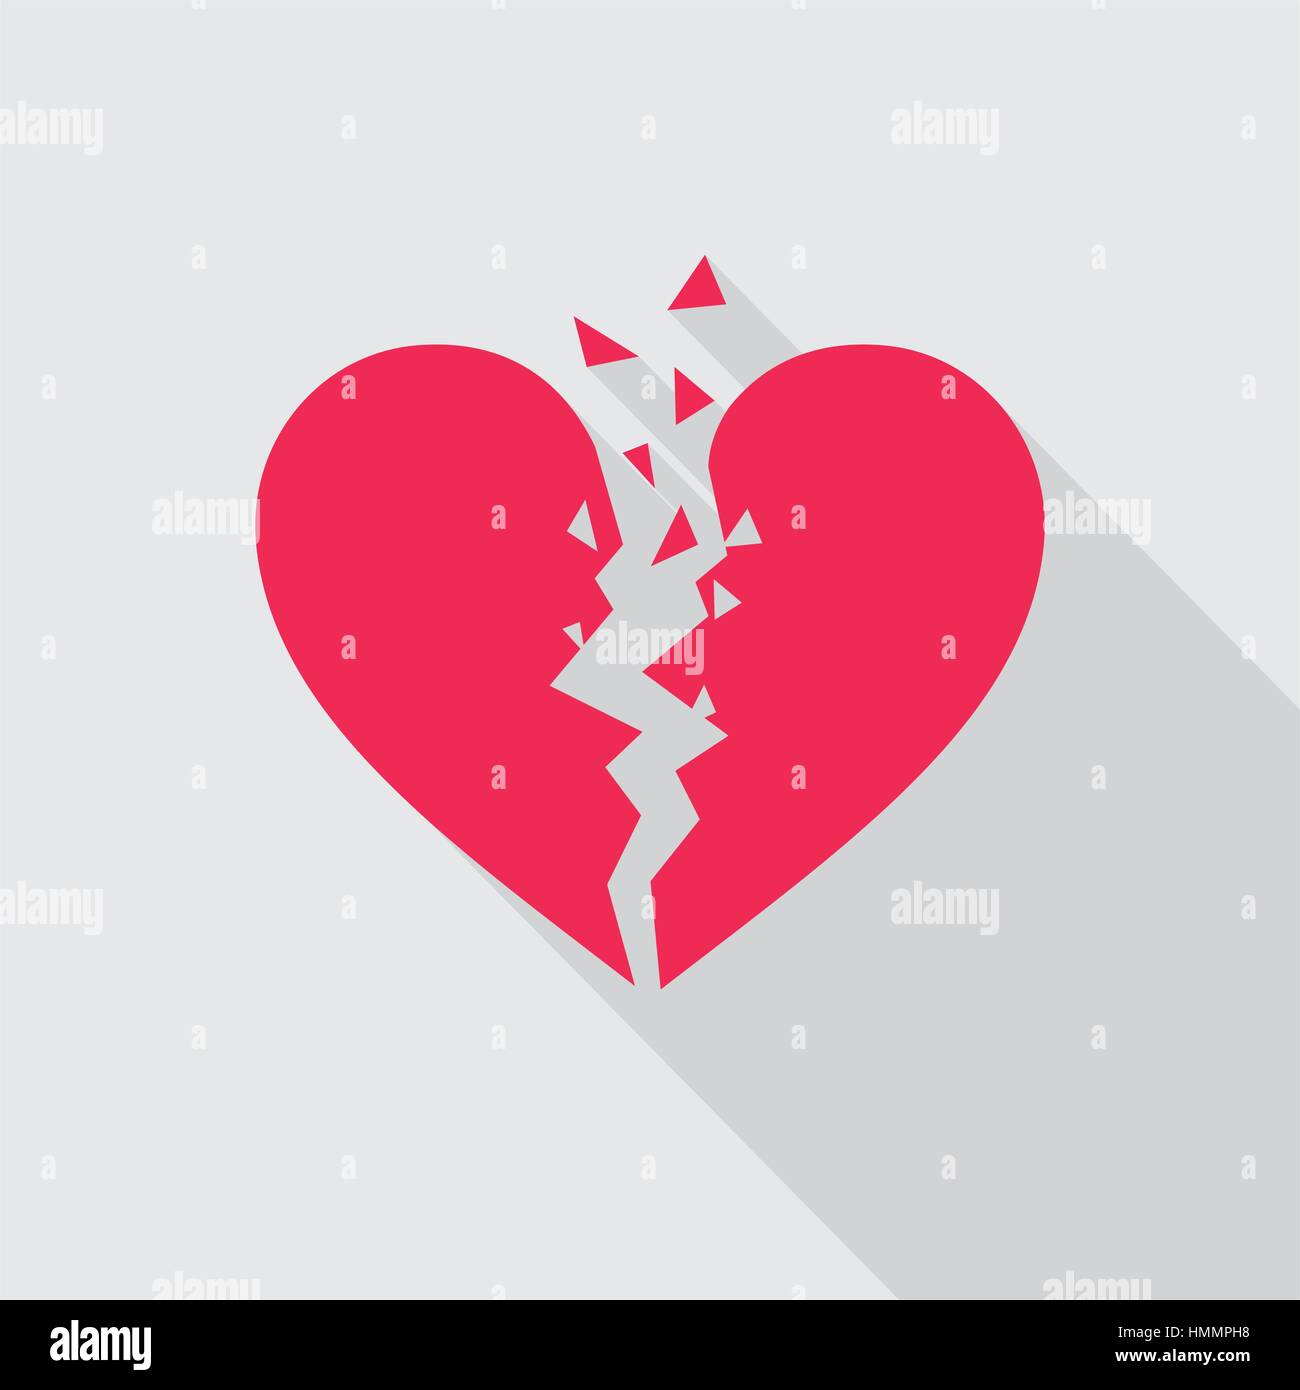 Flaches Herz-Symbol in rot auf grauem Hintergrund gebrochen. Symbol des gebrochenen Herzens. Vektor-Illustration im EPS8-Format. Stock Vektor